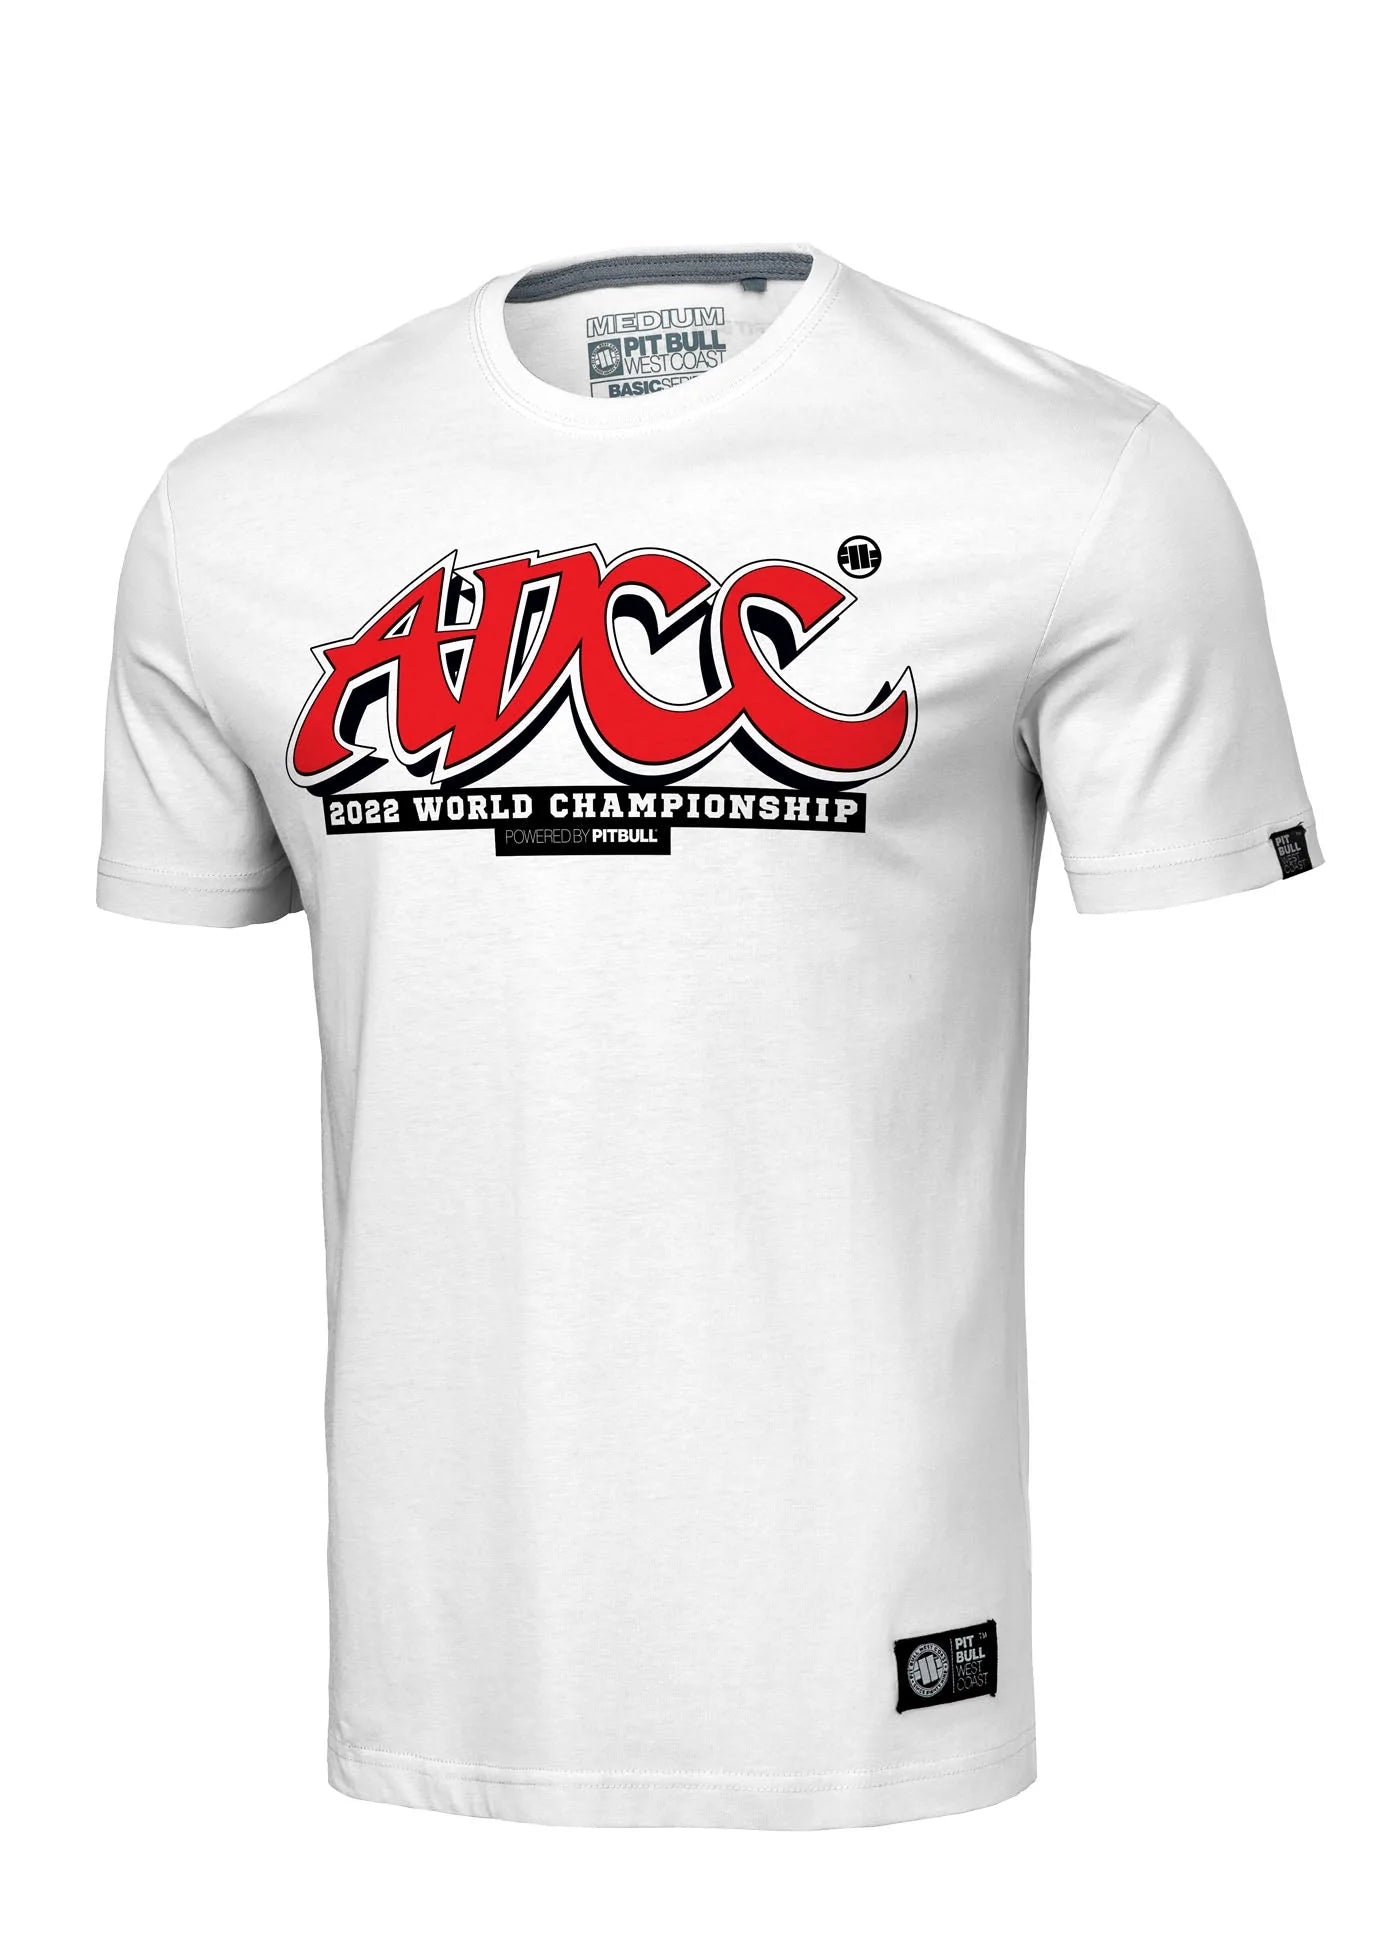 ADCC white short sleeve T-shirt